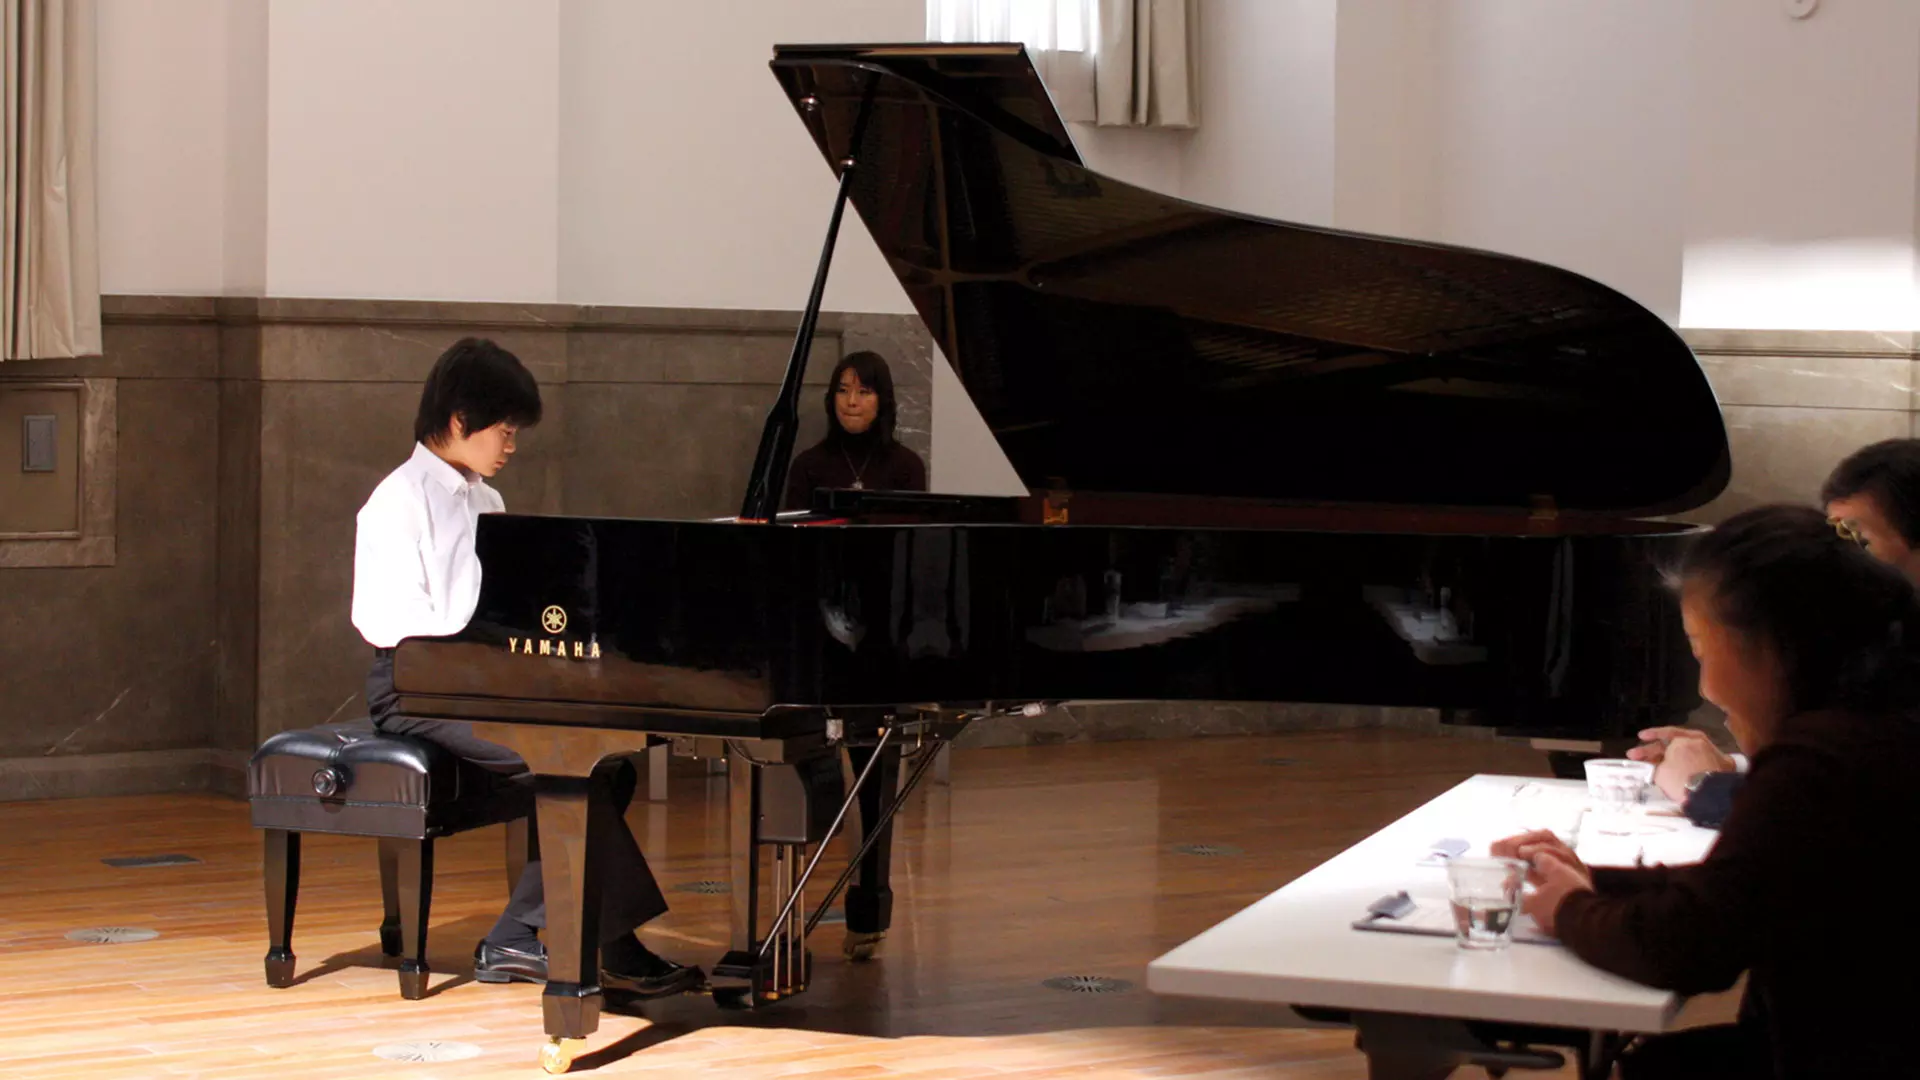 کودک در حال پیانو زدن در فیلم سونات توکیو